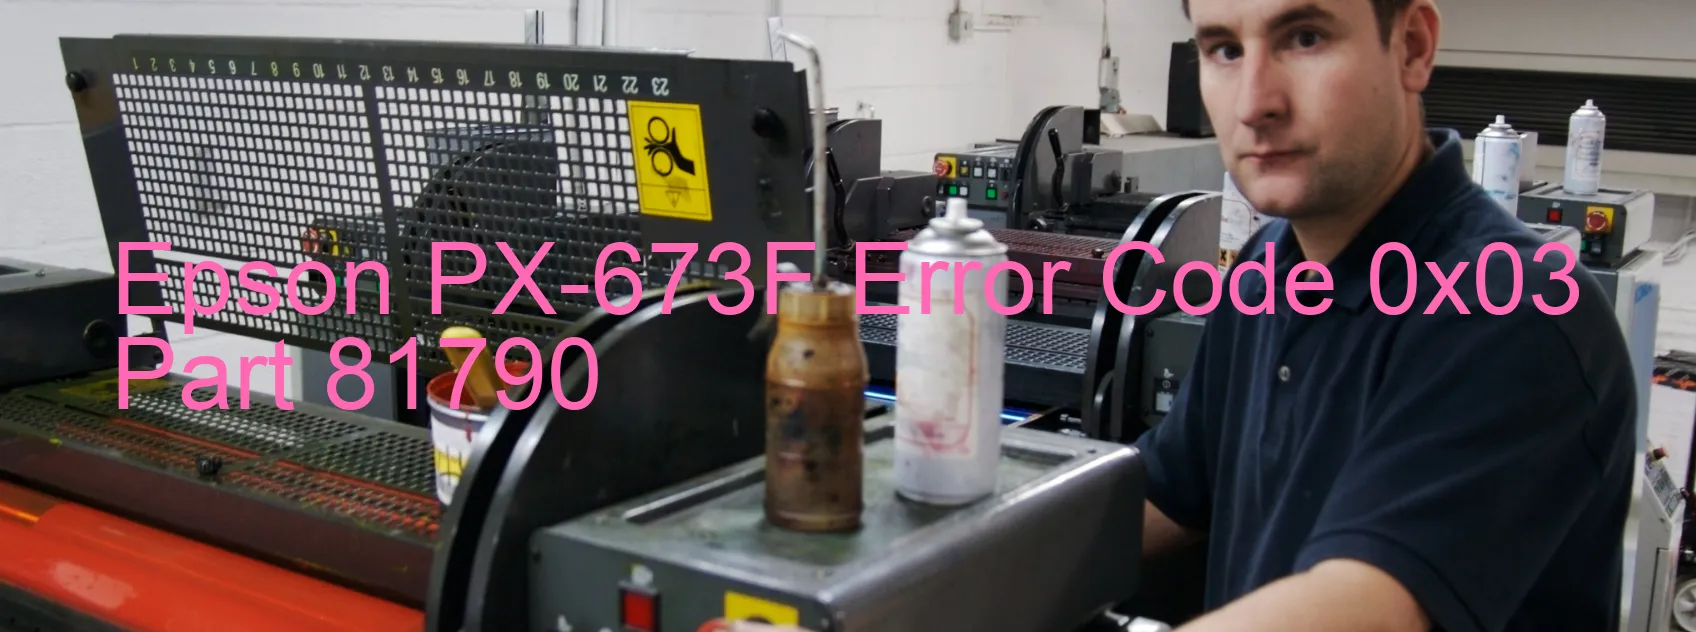 Epson PX-673F Error Code 0x03 Part 81790